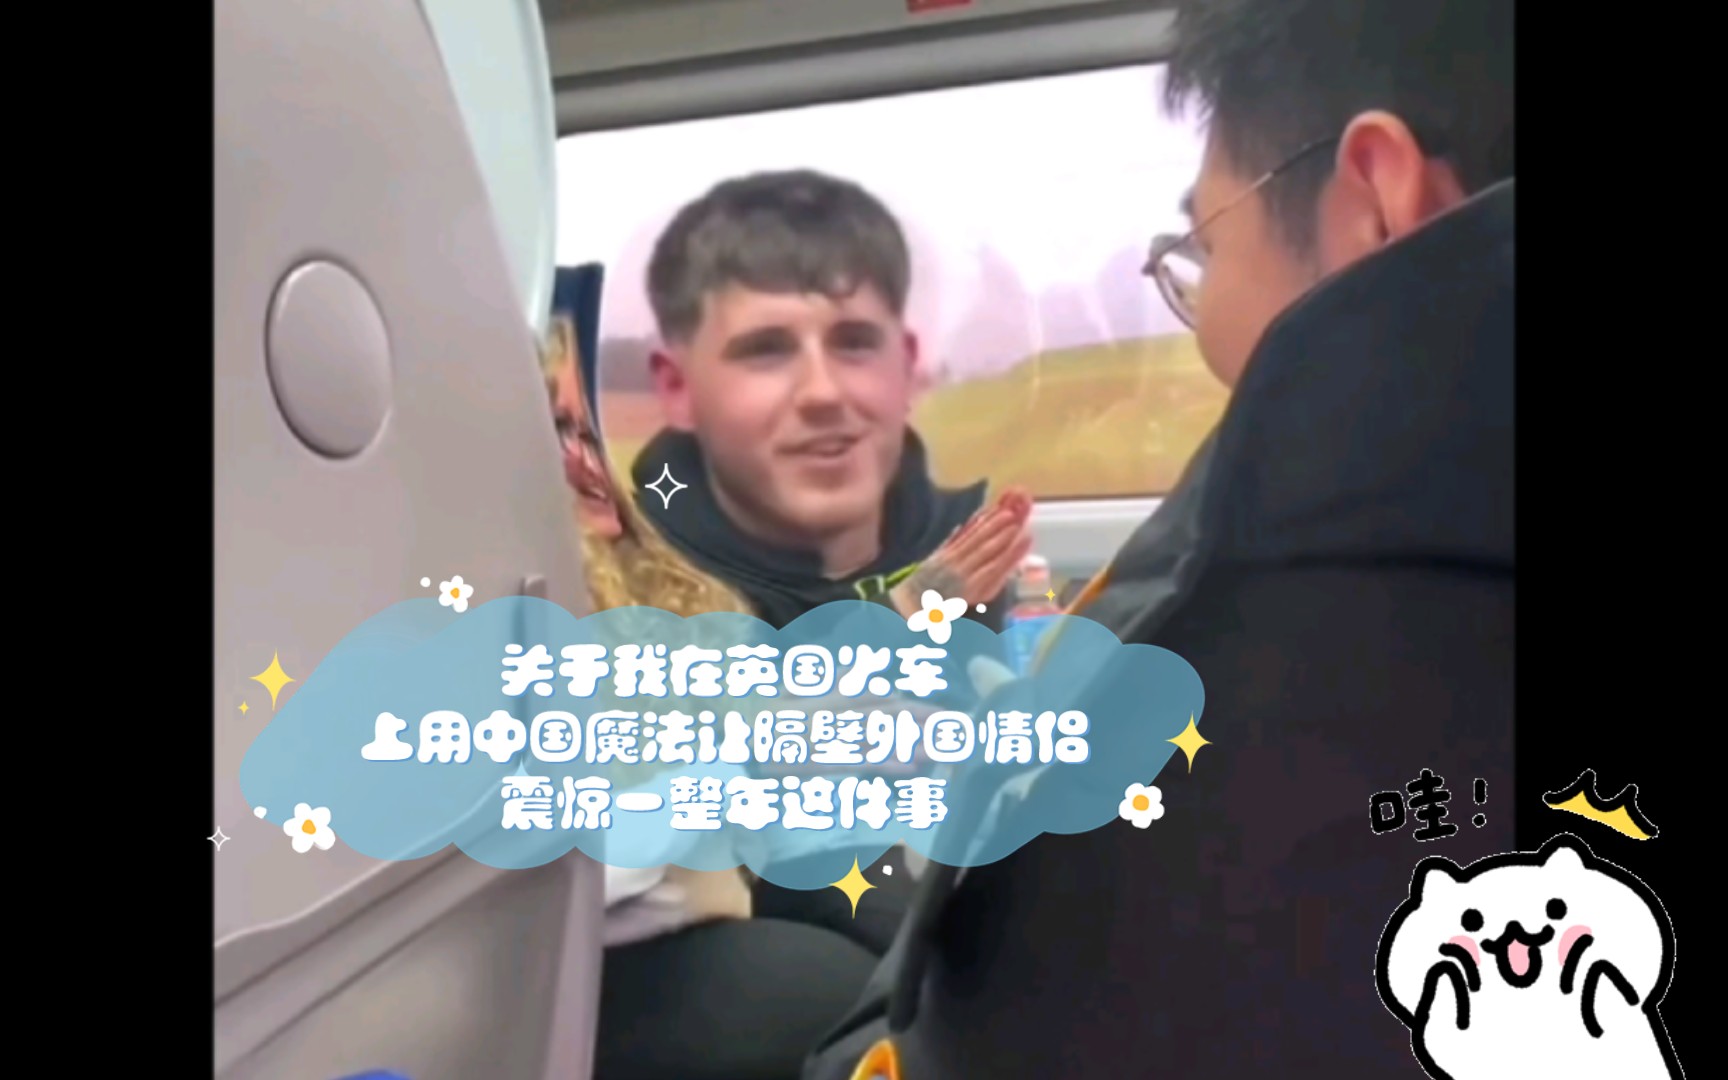 关于我在英国火车上用中国魔法让隔壁外国情侣震惊一整年这件事